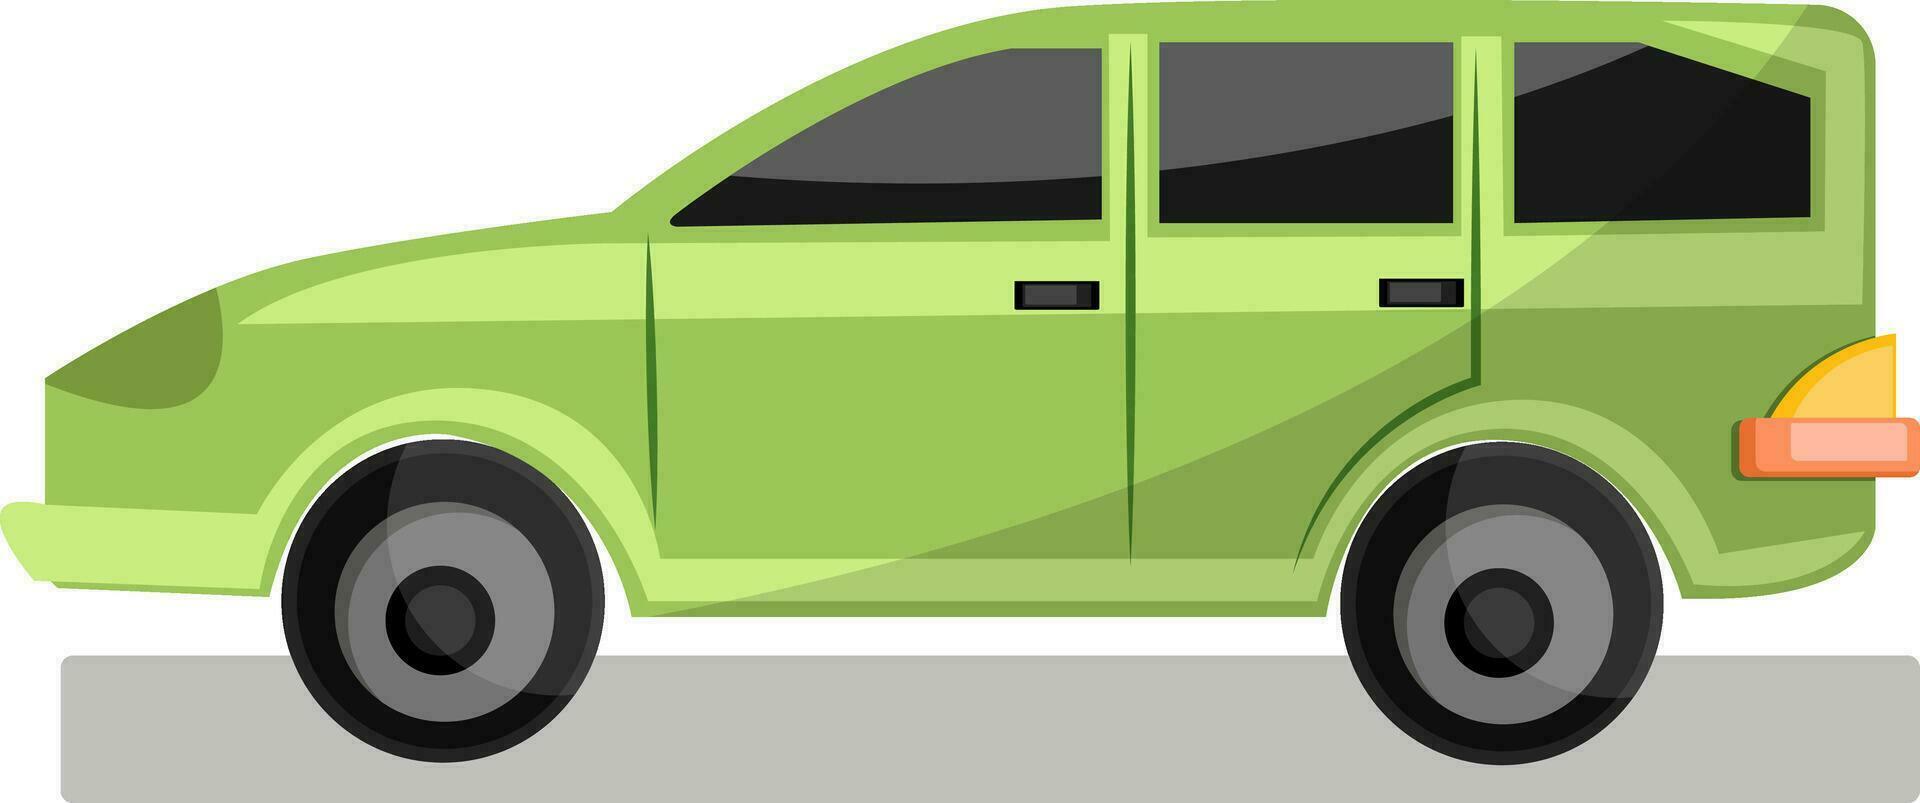 ljus grön familj bil vektor illustration på vit bakgrund.